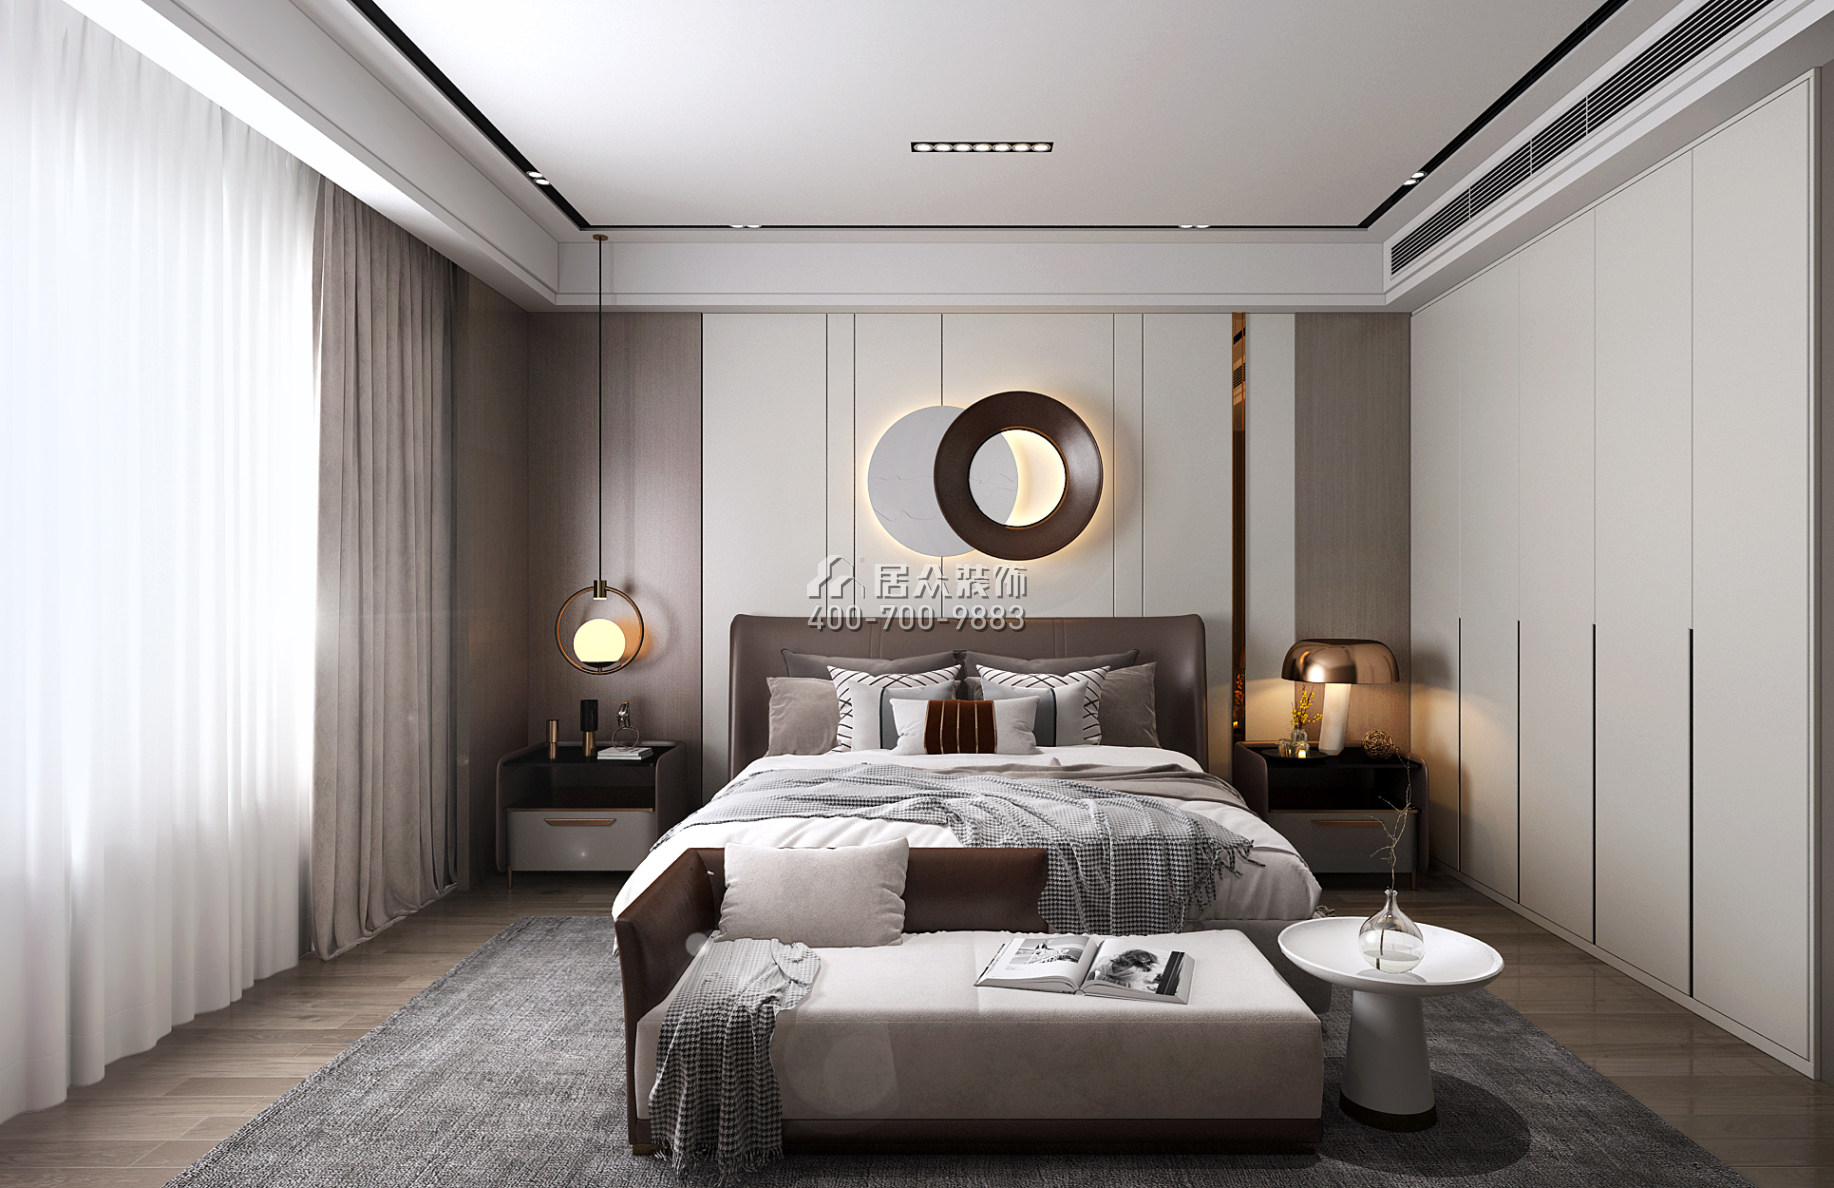 君华御庭189平方米现代简约风格平层户型卧室装修效果图